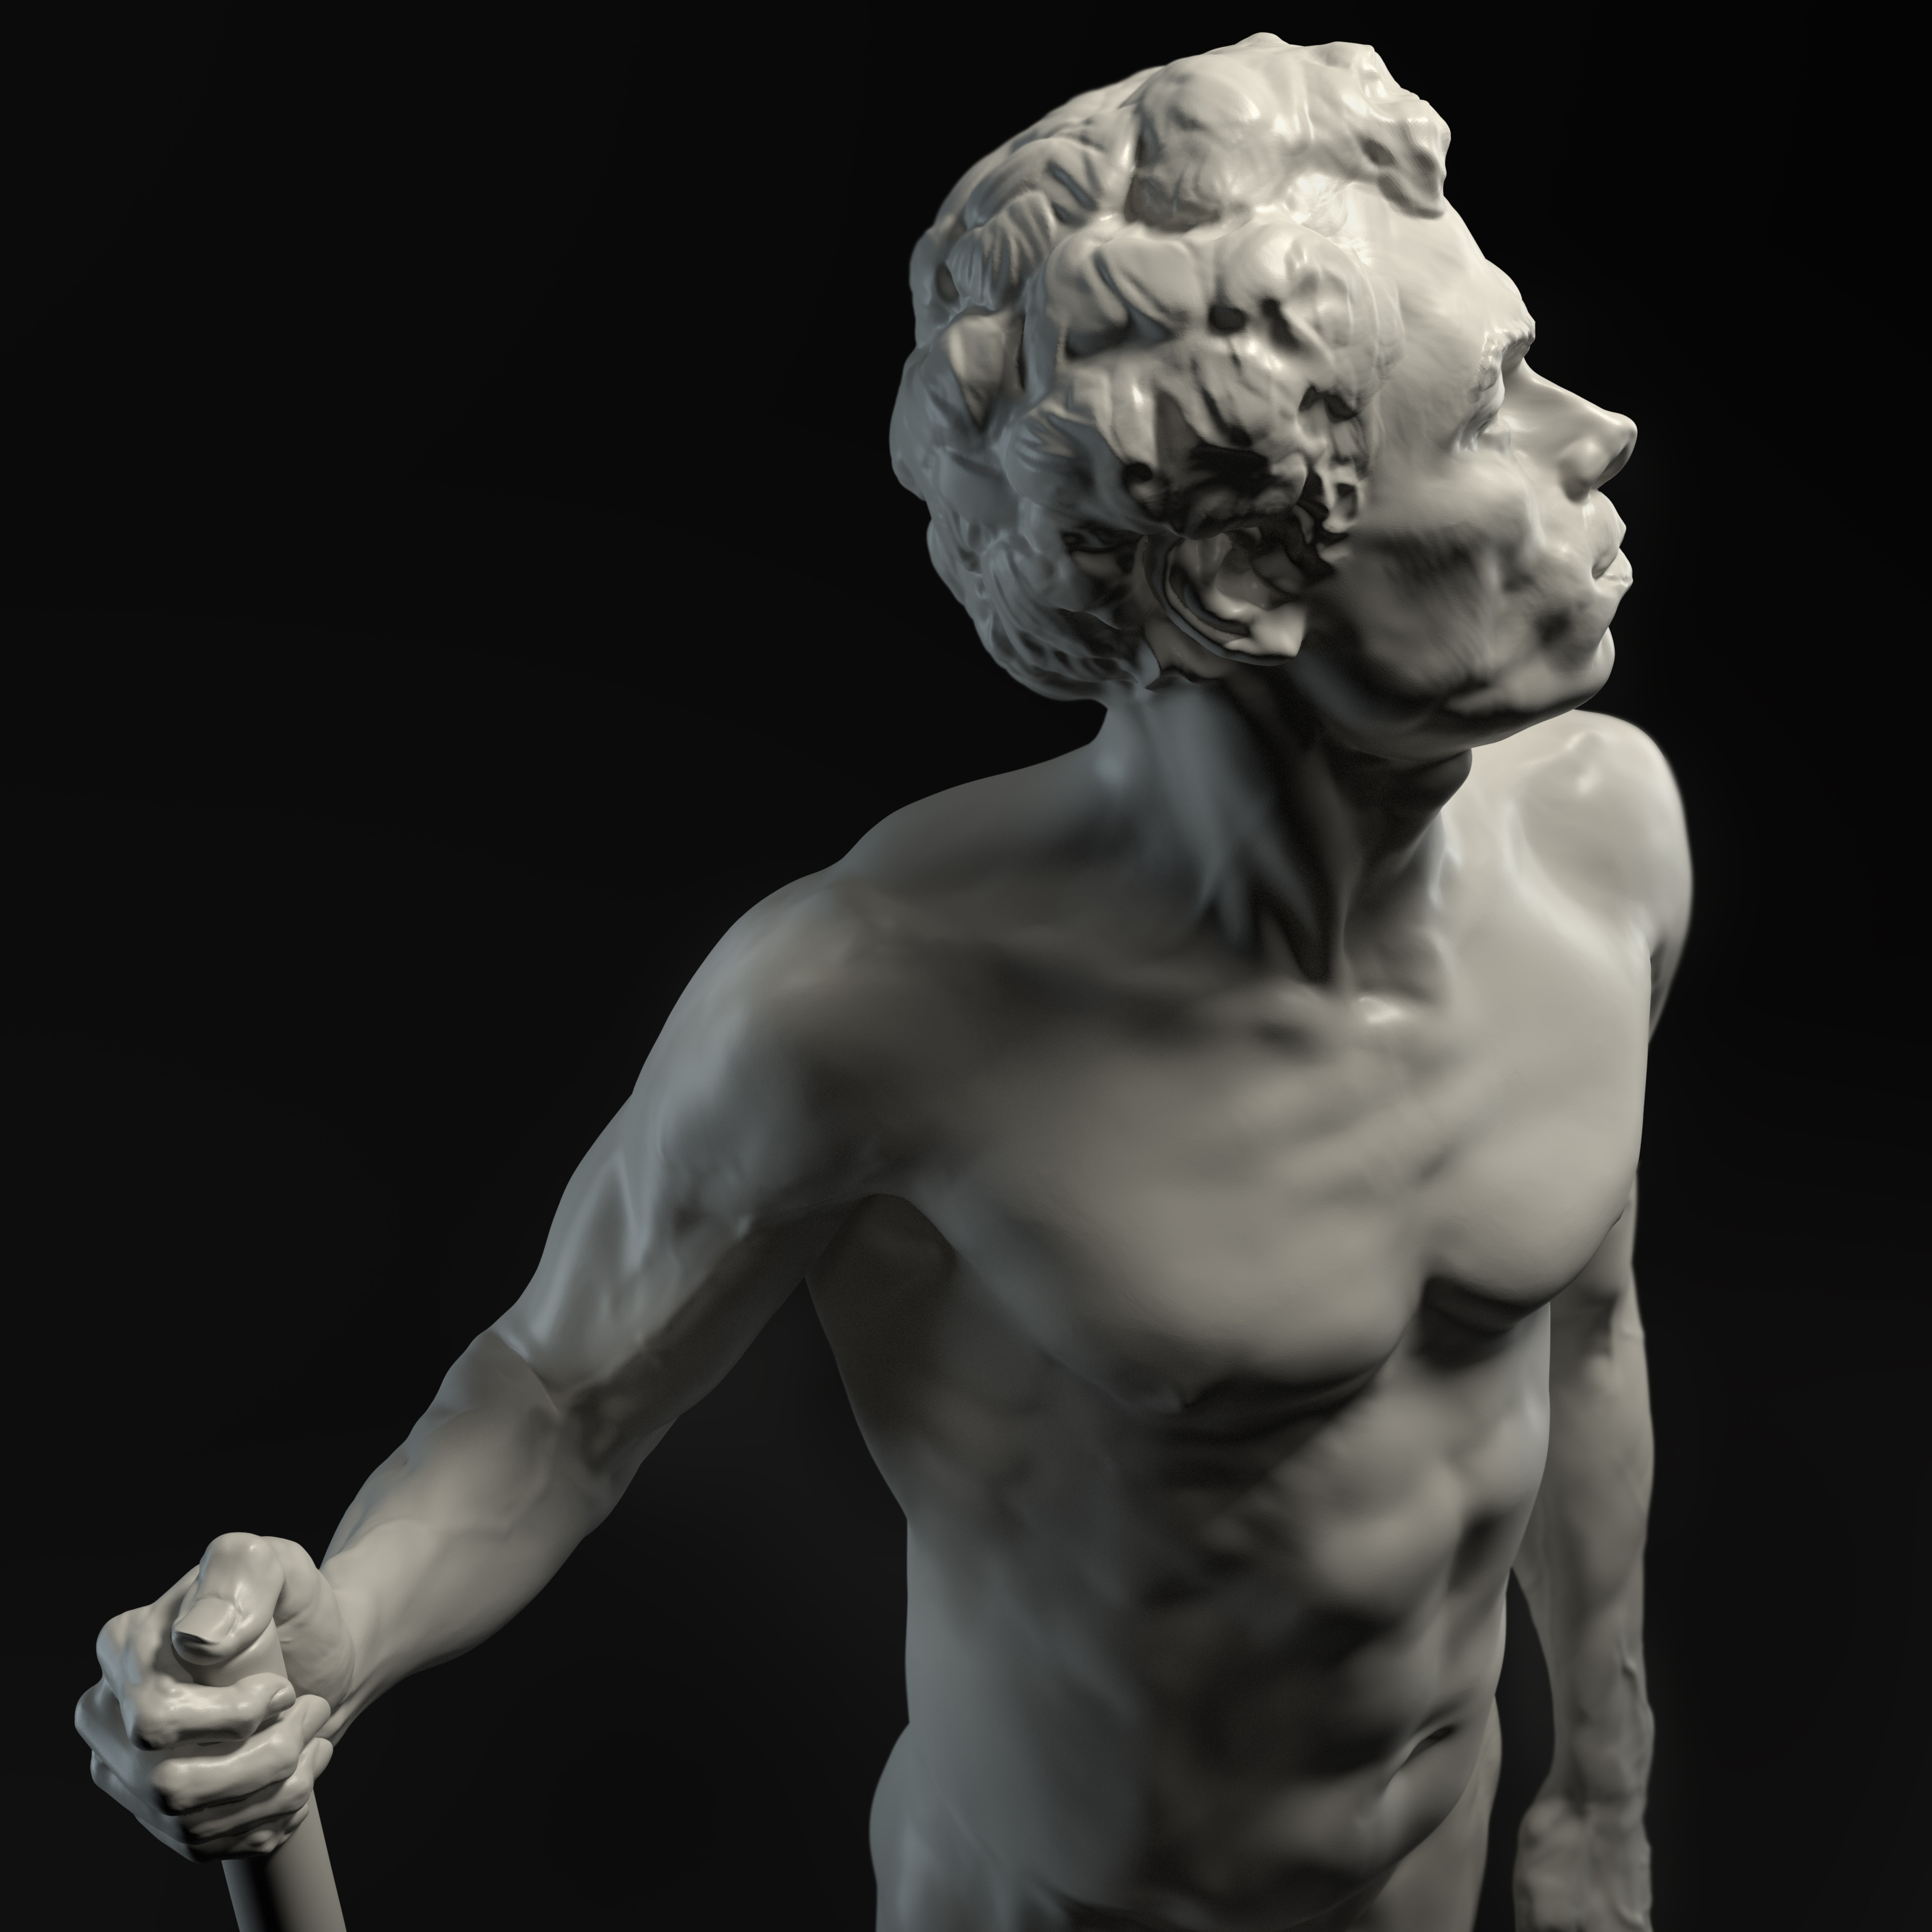 Alfons - Life model sculpting 